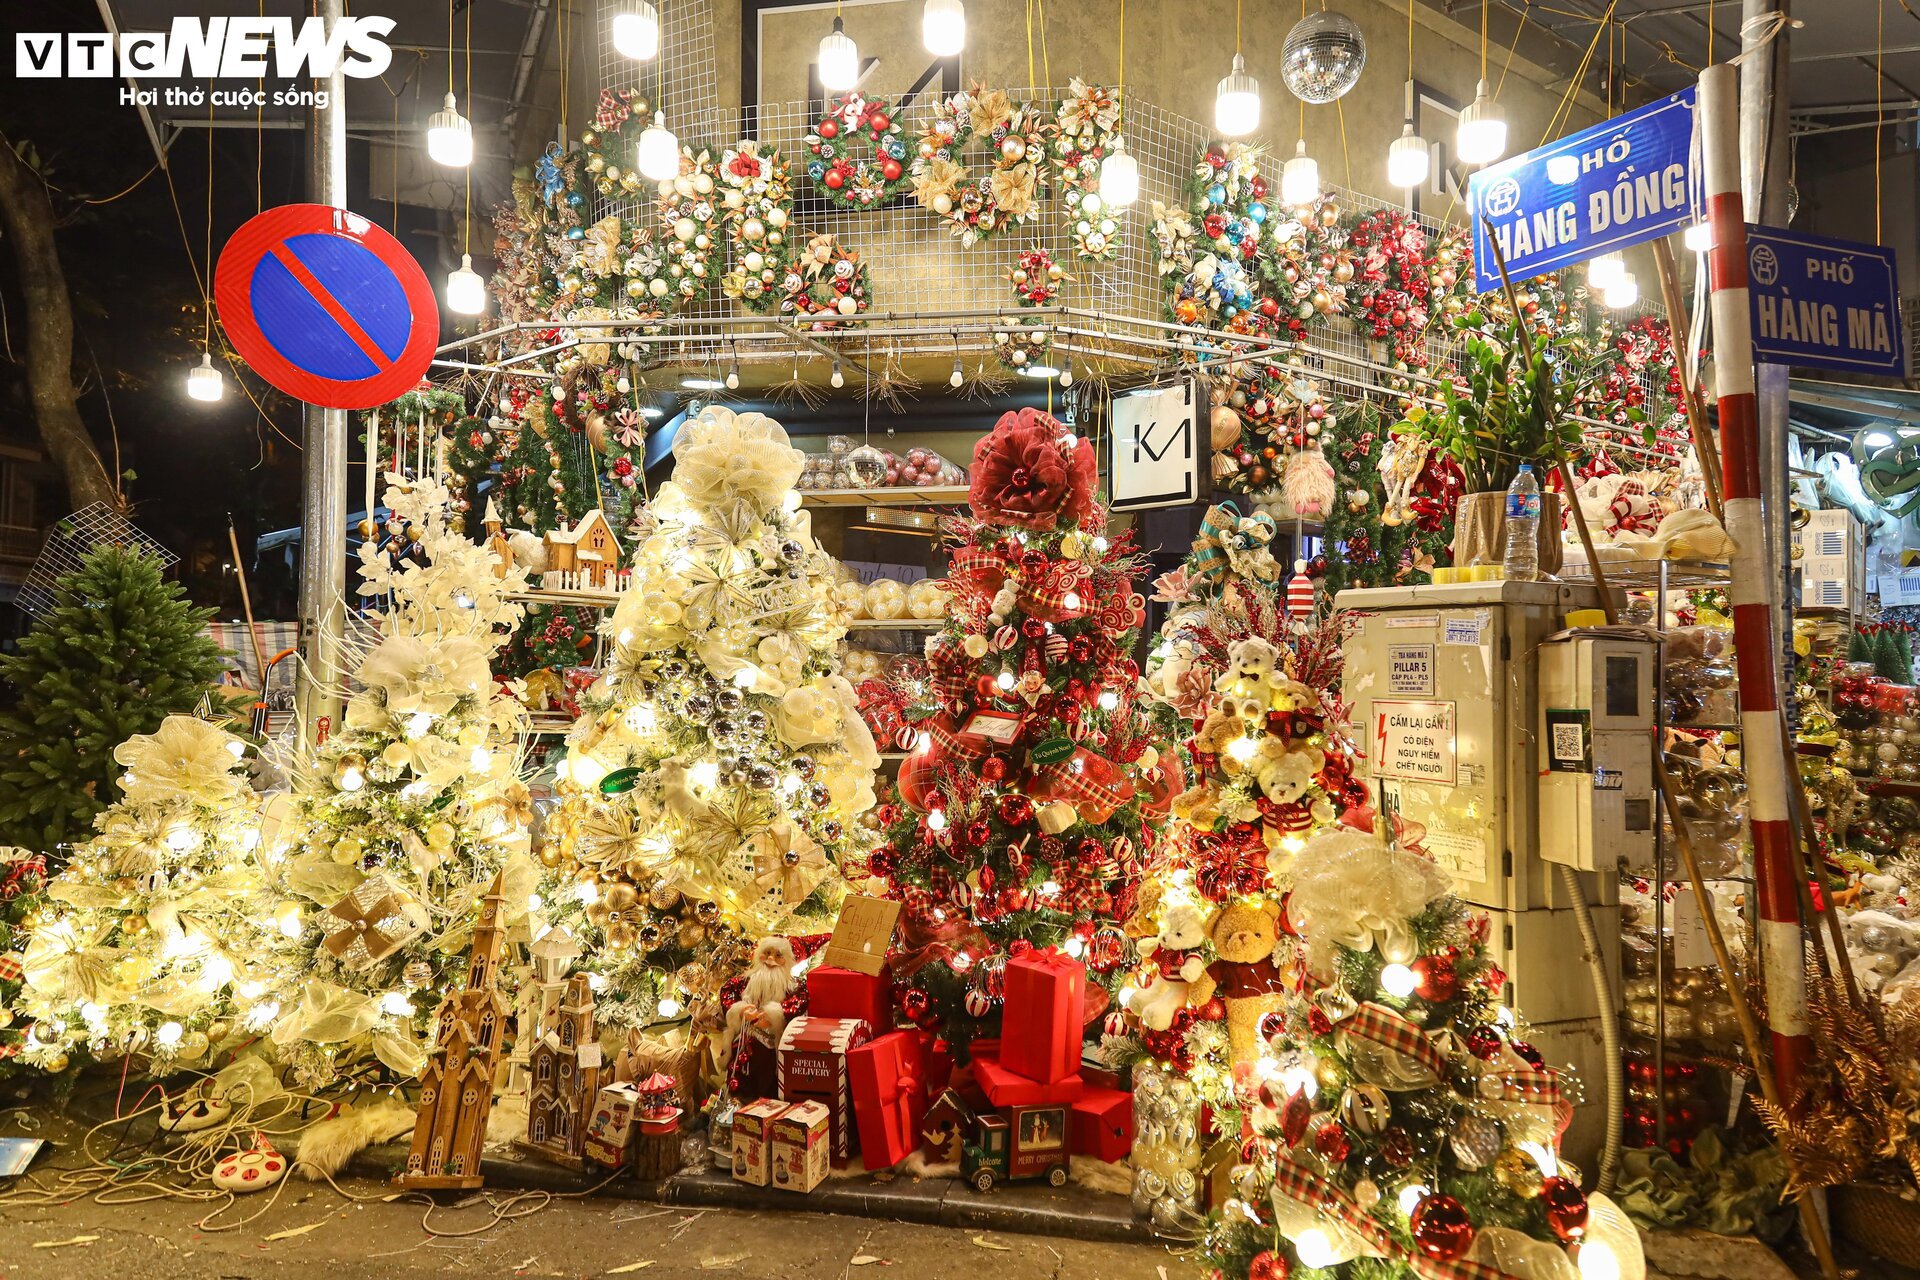 Khách xem nhiều hơn mua, thị trường đồ trang trí Giáng sinh ở Hà Nội 'cảm lạnh' - Ảnh 9.